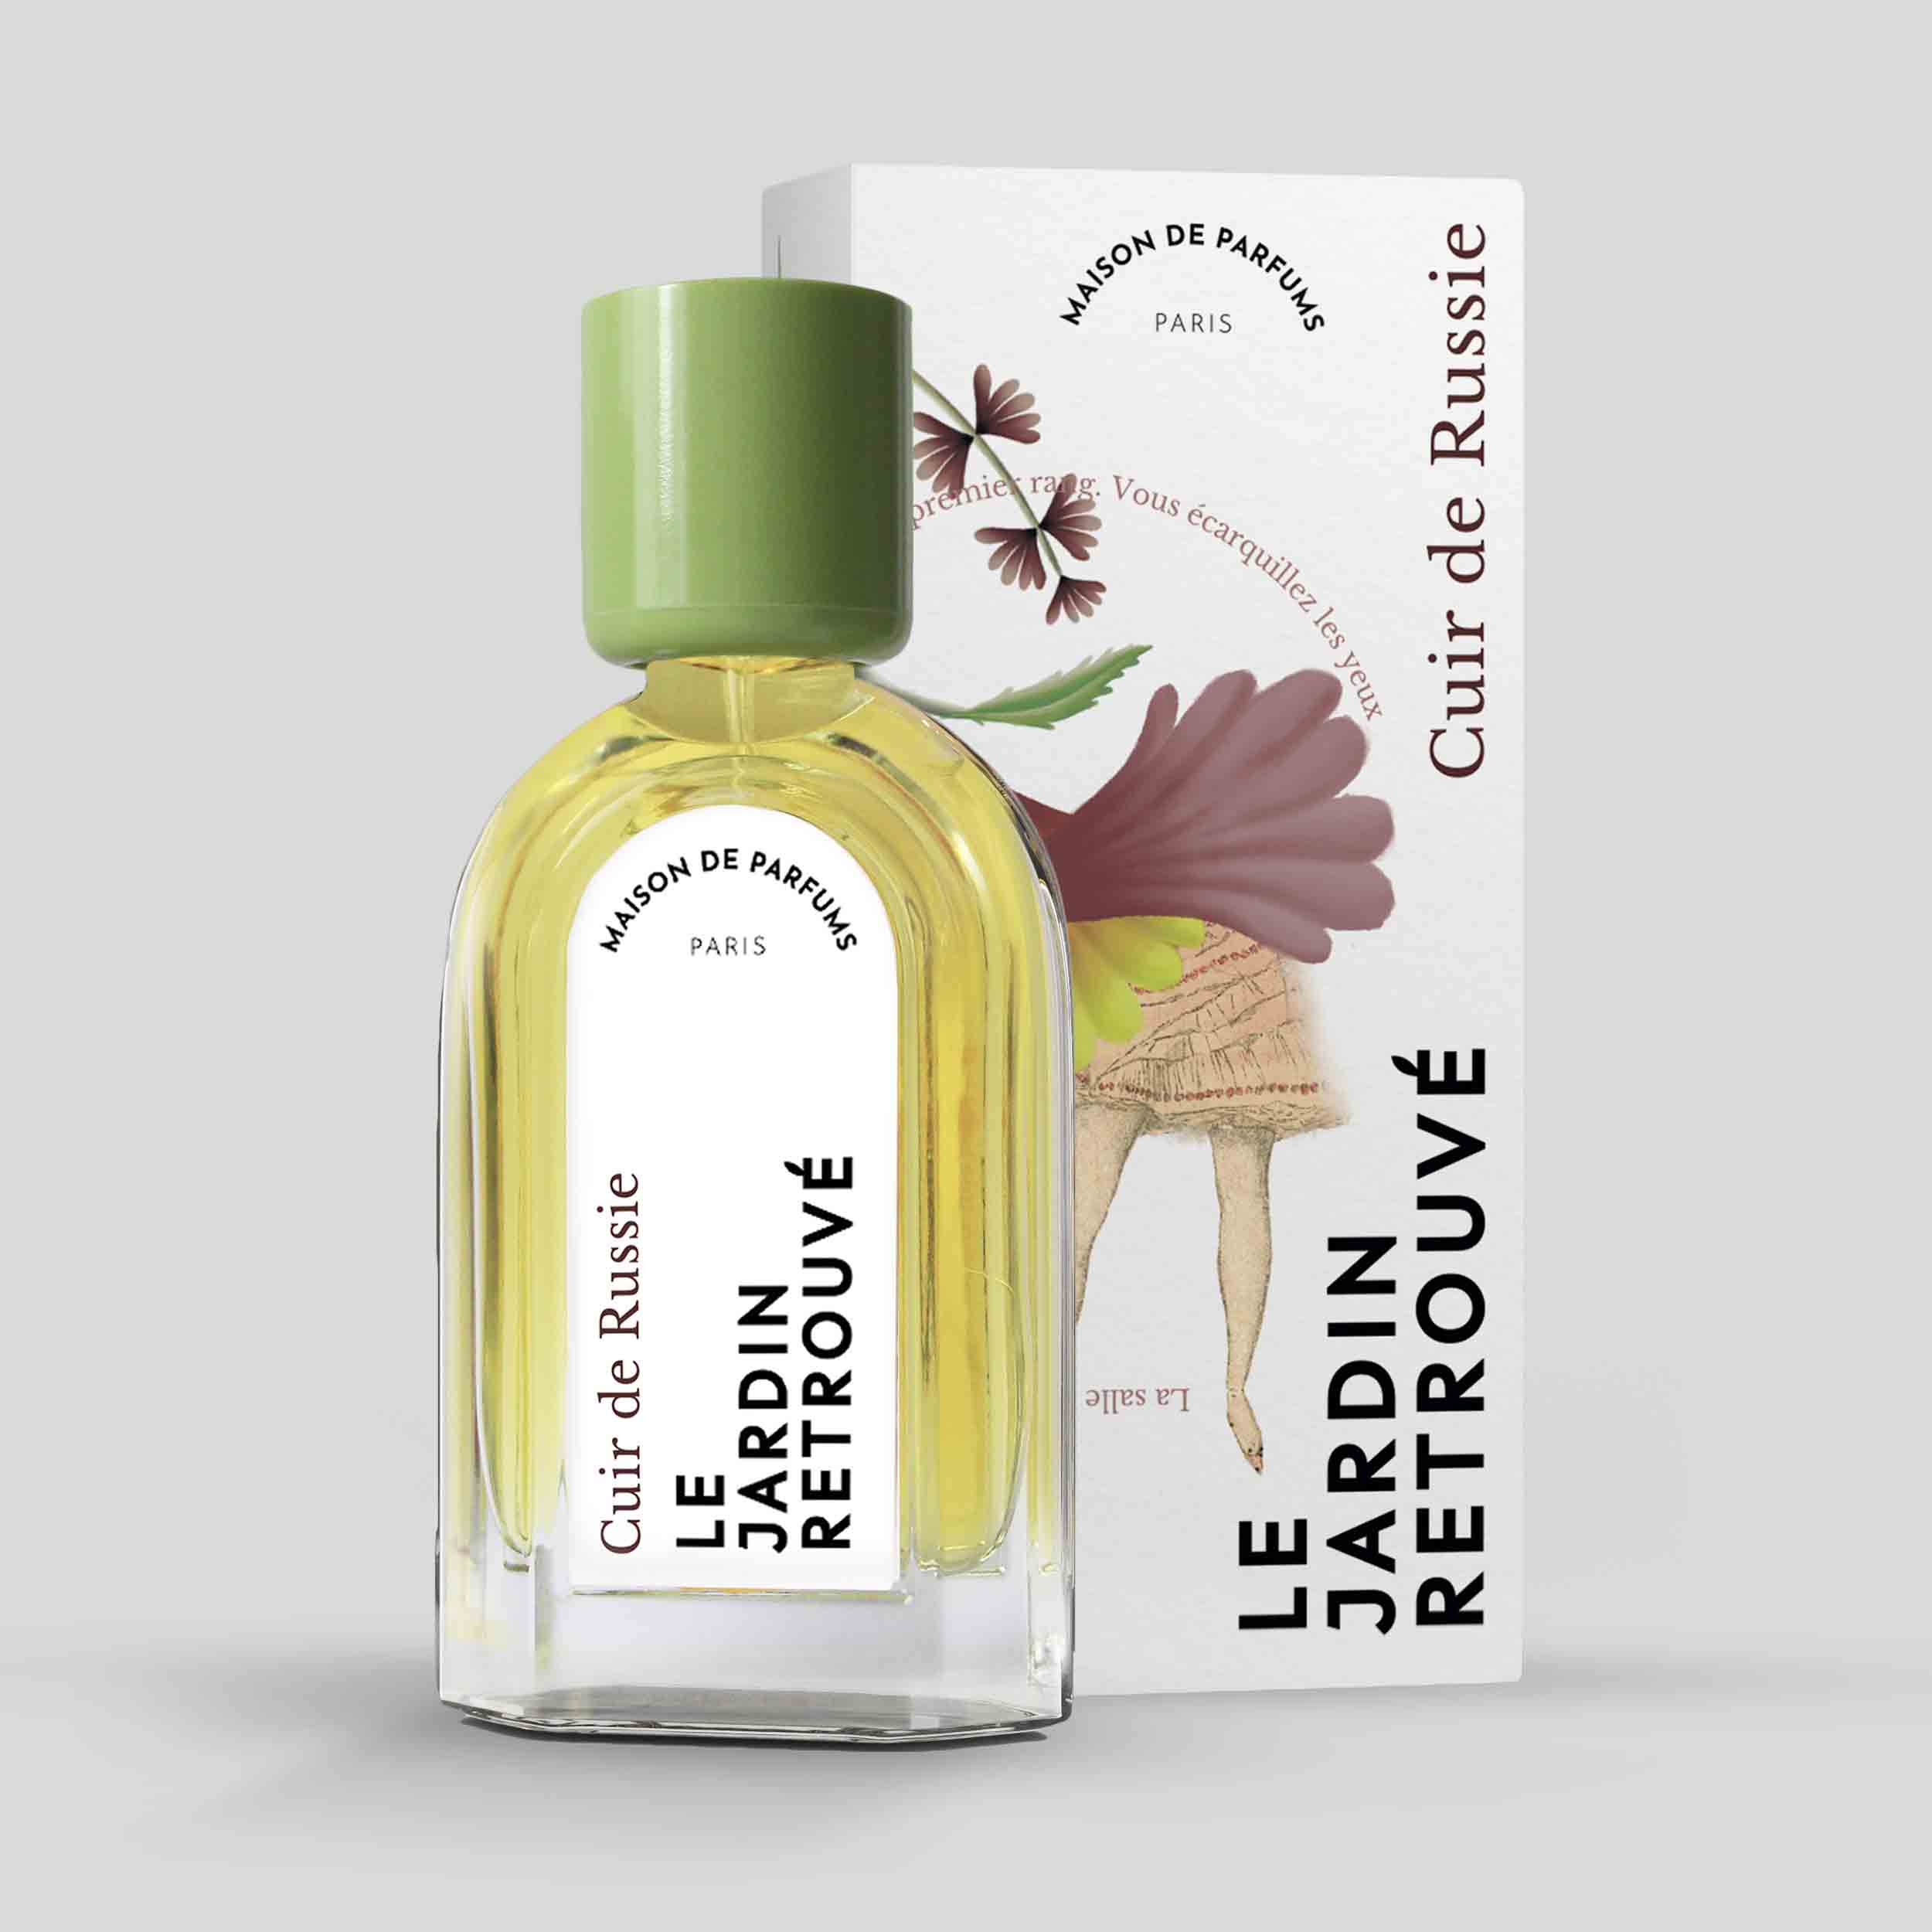 Cuir de Russie Eau de Parfum 50ml Bottle and Box by Le Jardin Retrouvé